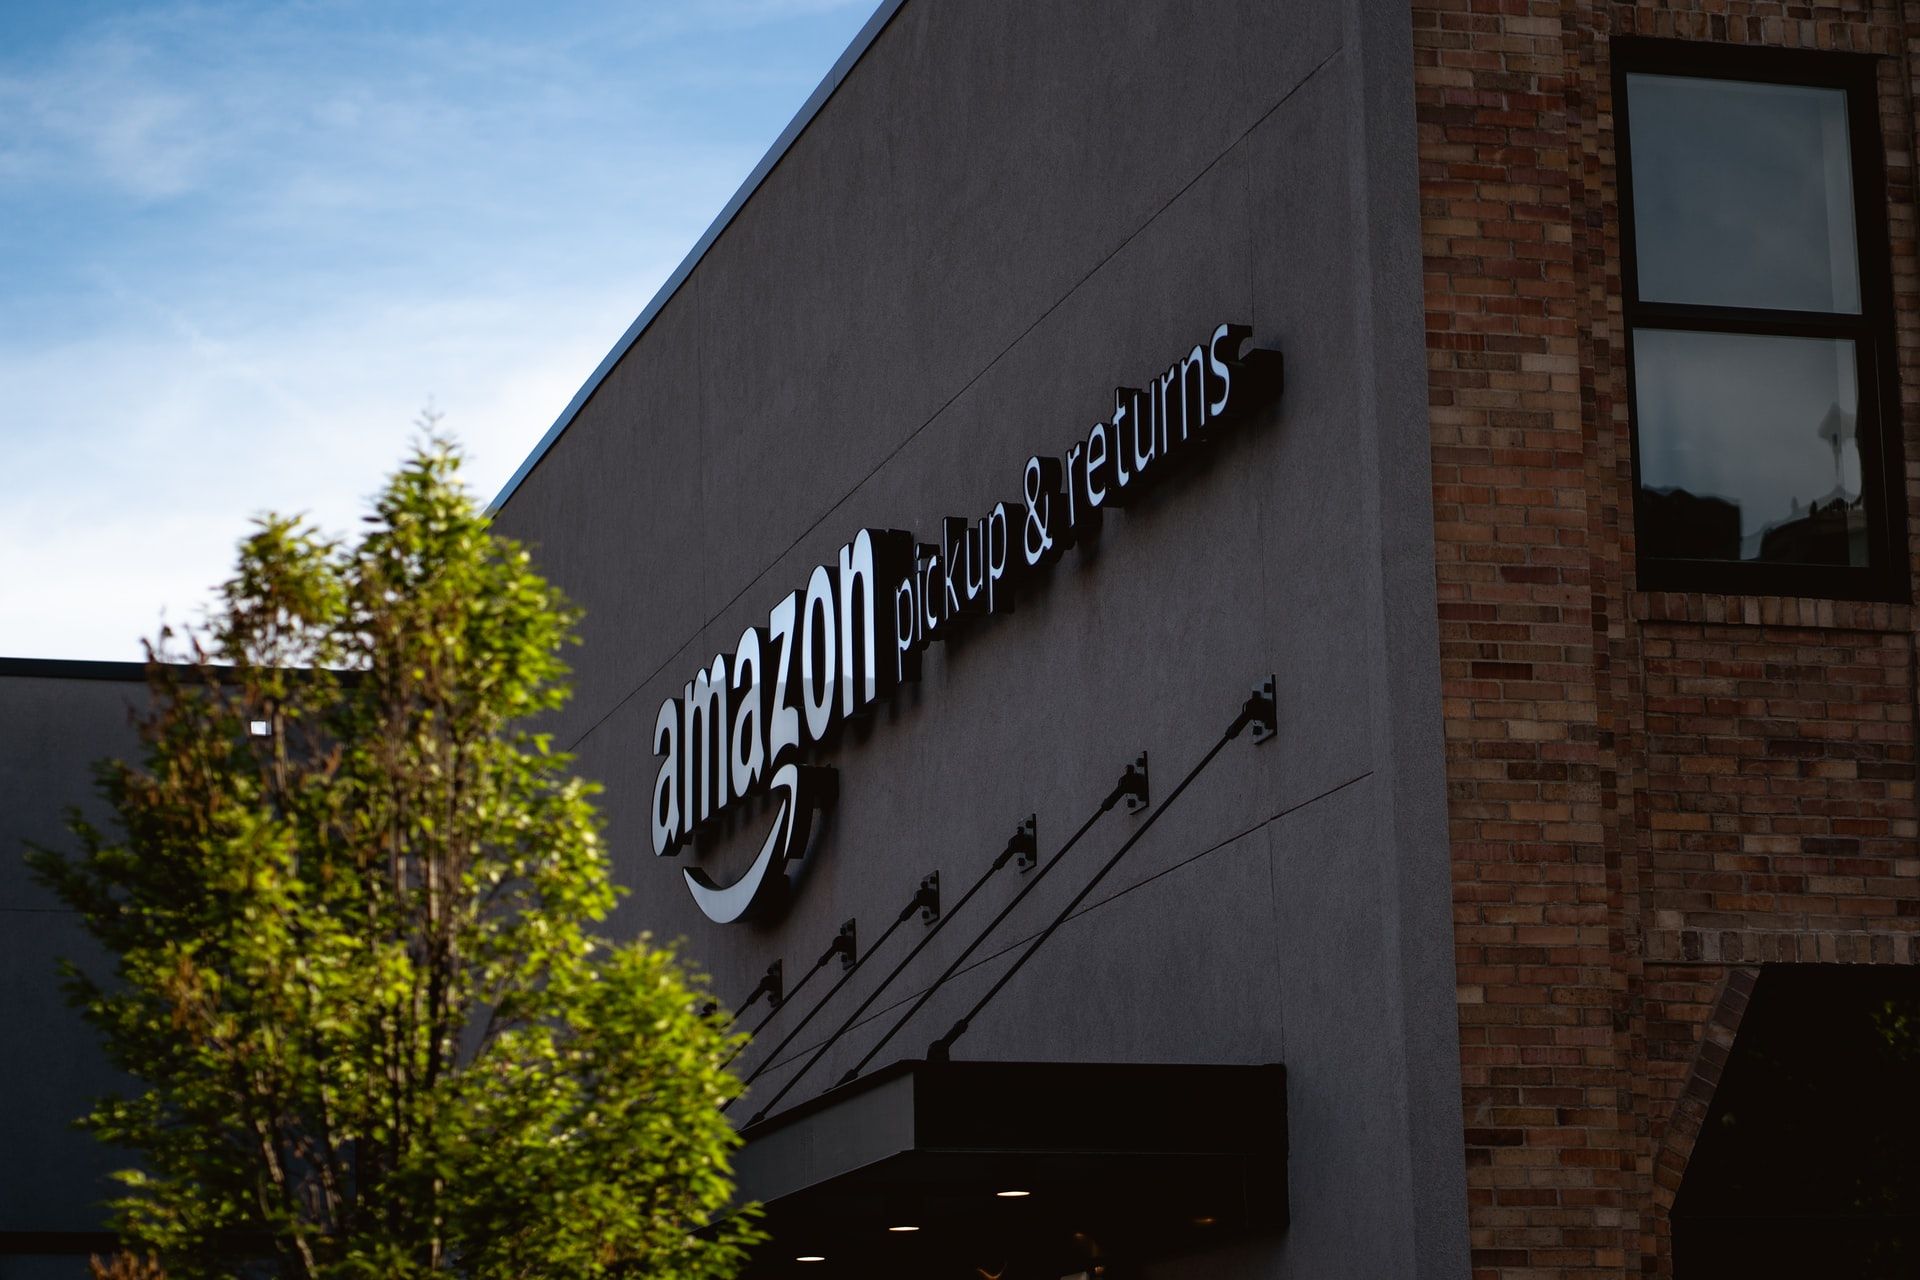 За перший квартал 2021 року компанія Amazon заробила понад 100 мільярдів доларів